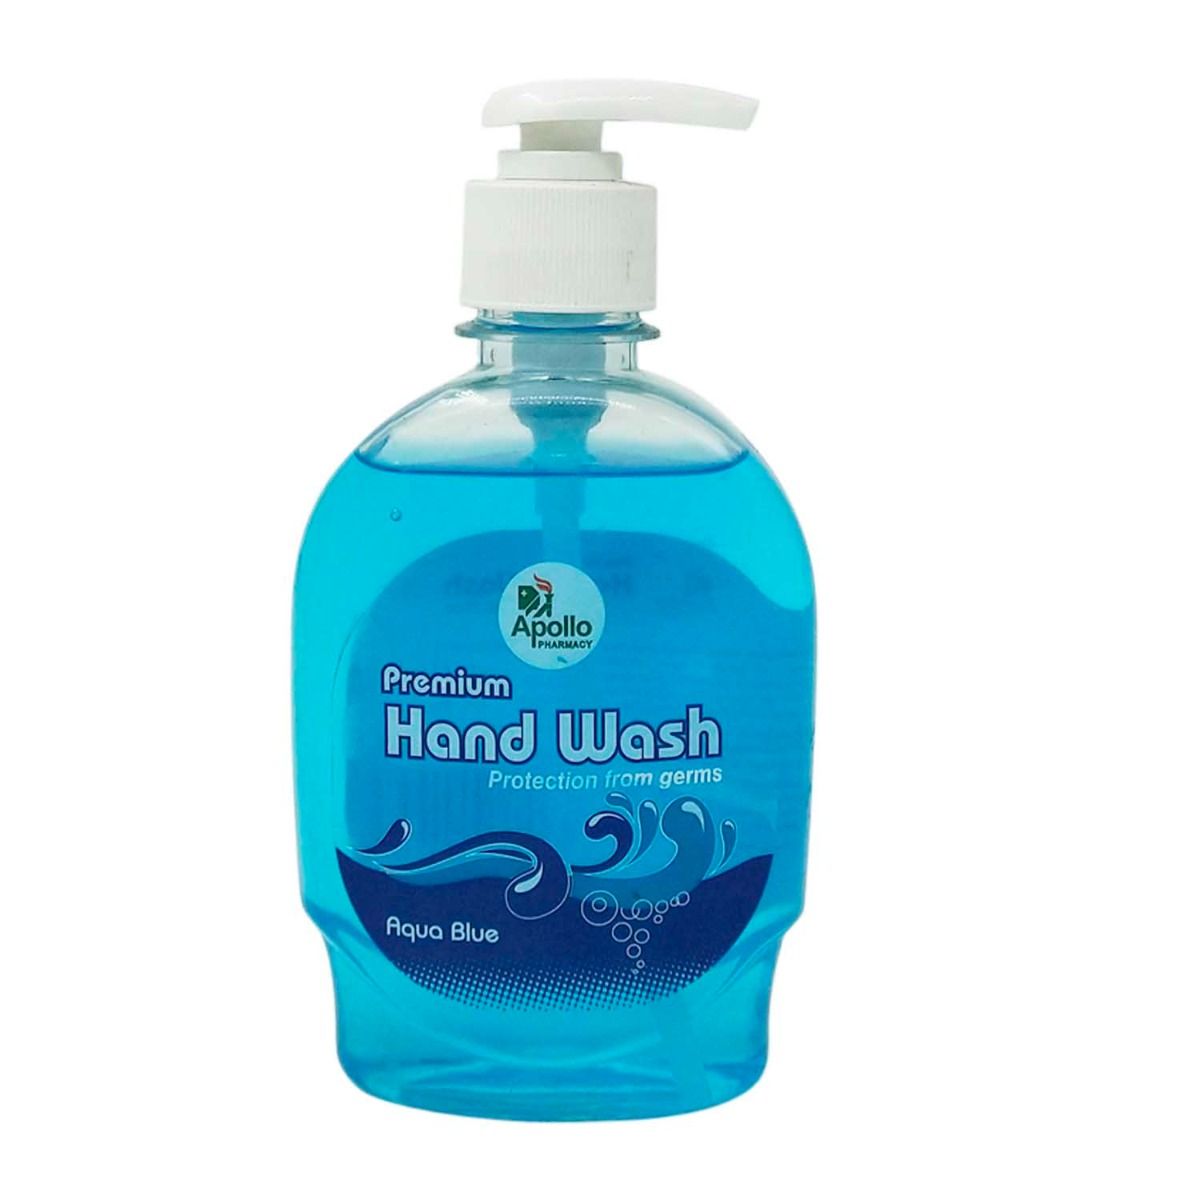 Apollo Pharmacy Premium Aqua Blue Handwash, 250 ml, Pack of 1 